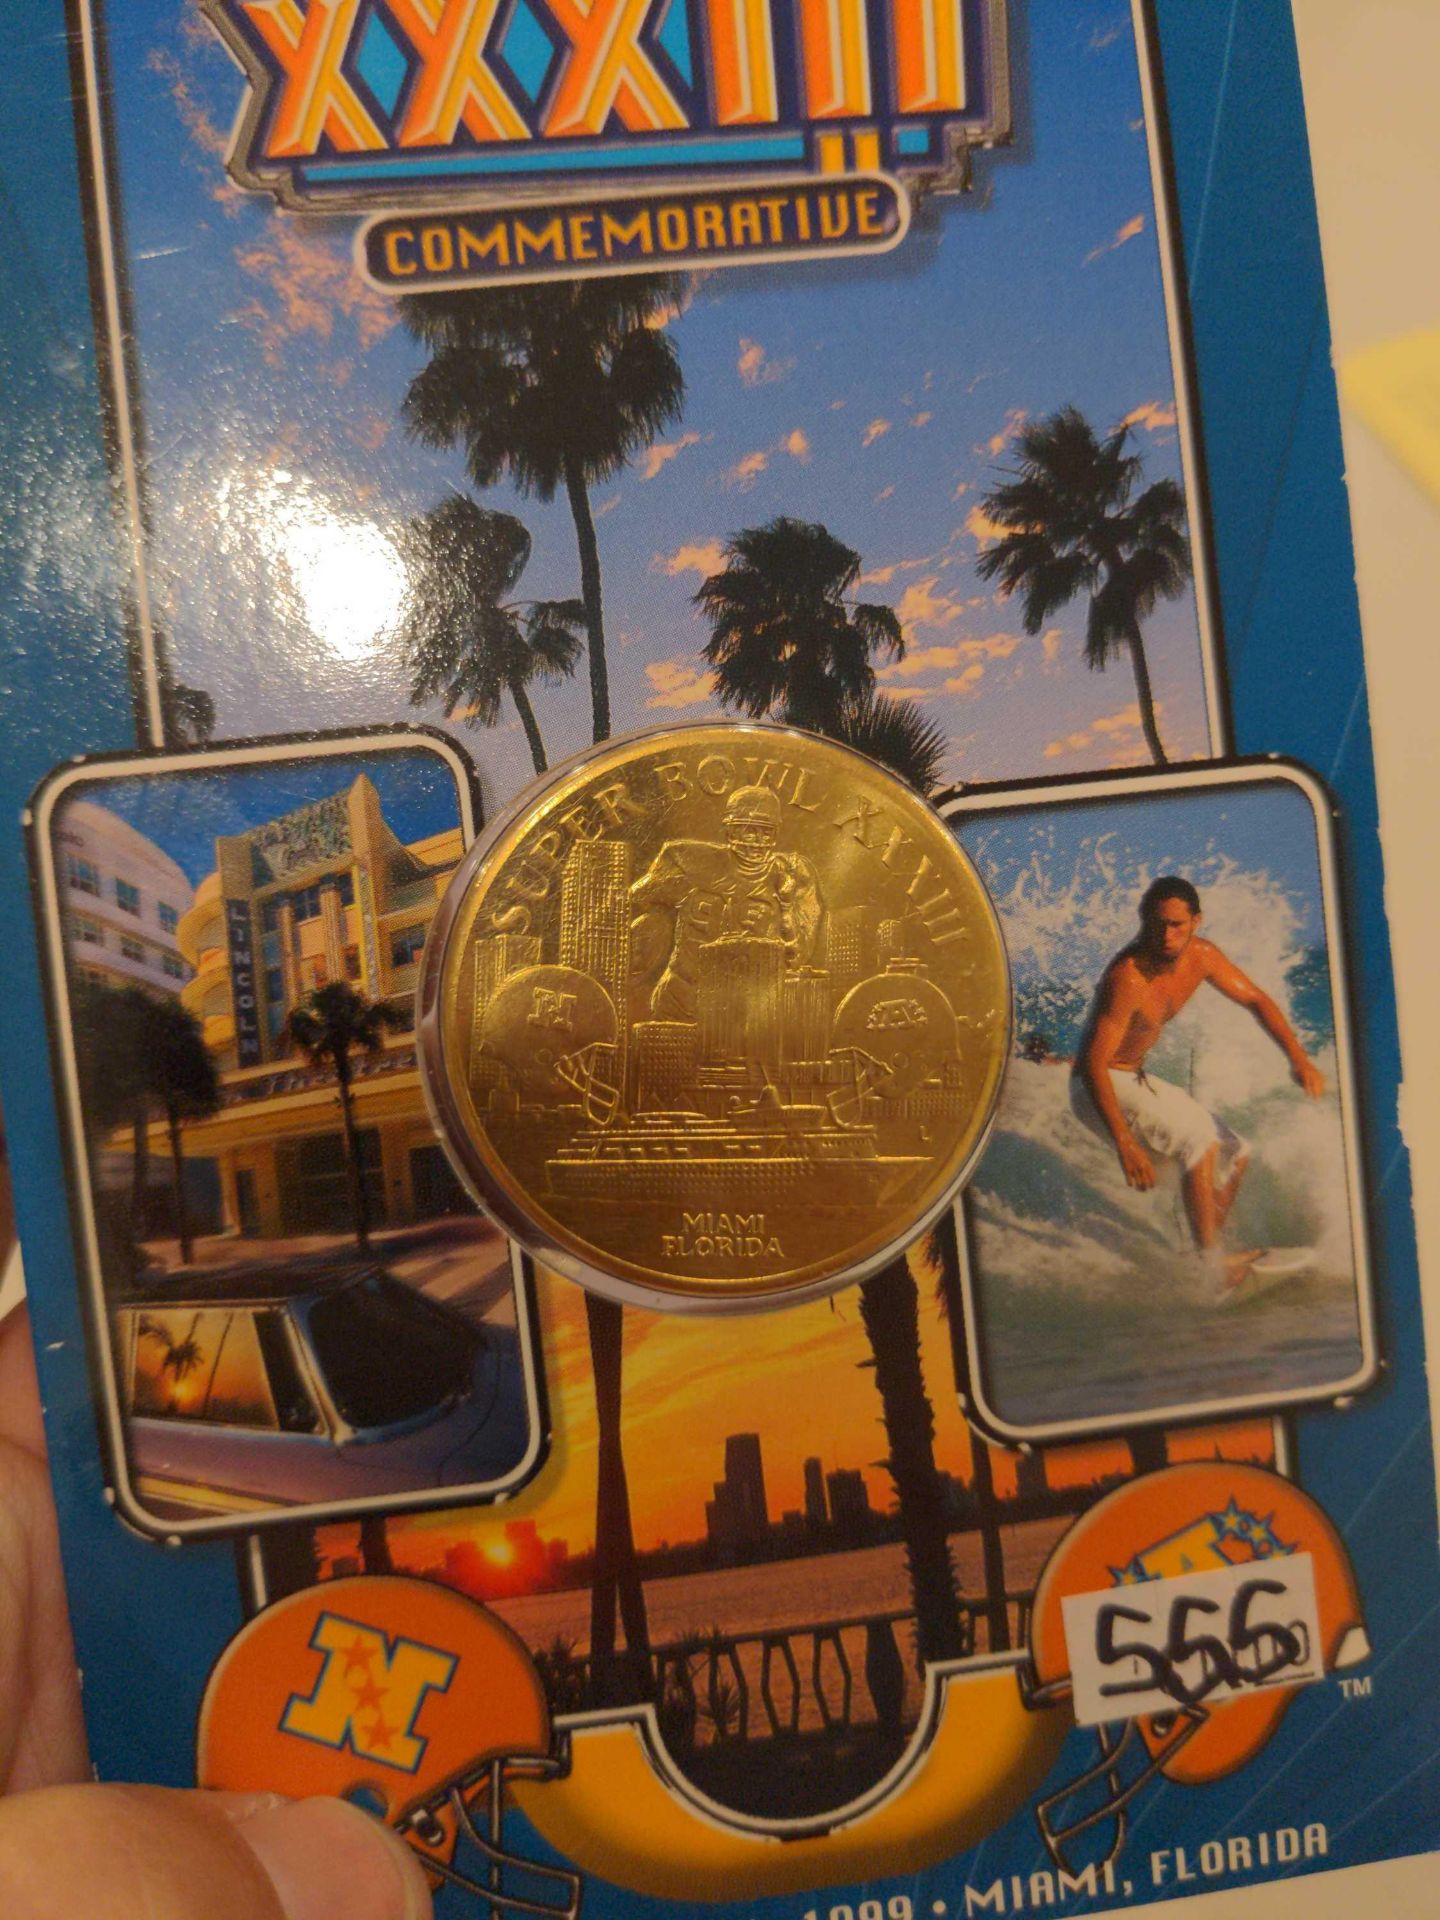 2 Commemorative Super Bowl Coins, Atlanta 1994 and Miami 1999 - Image 5 of 6